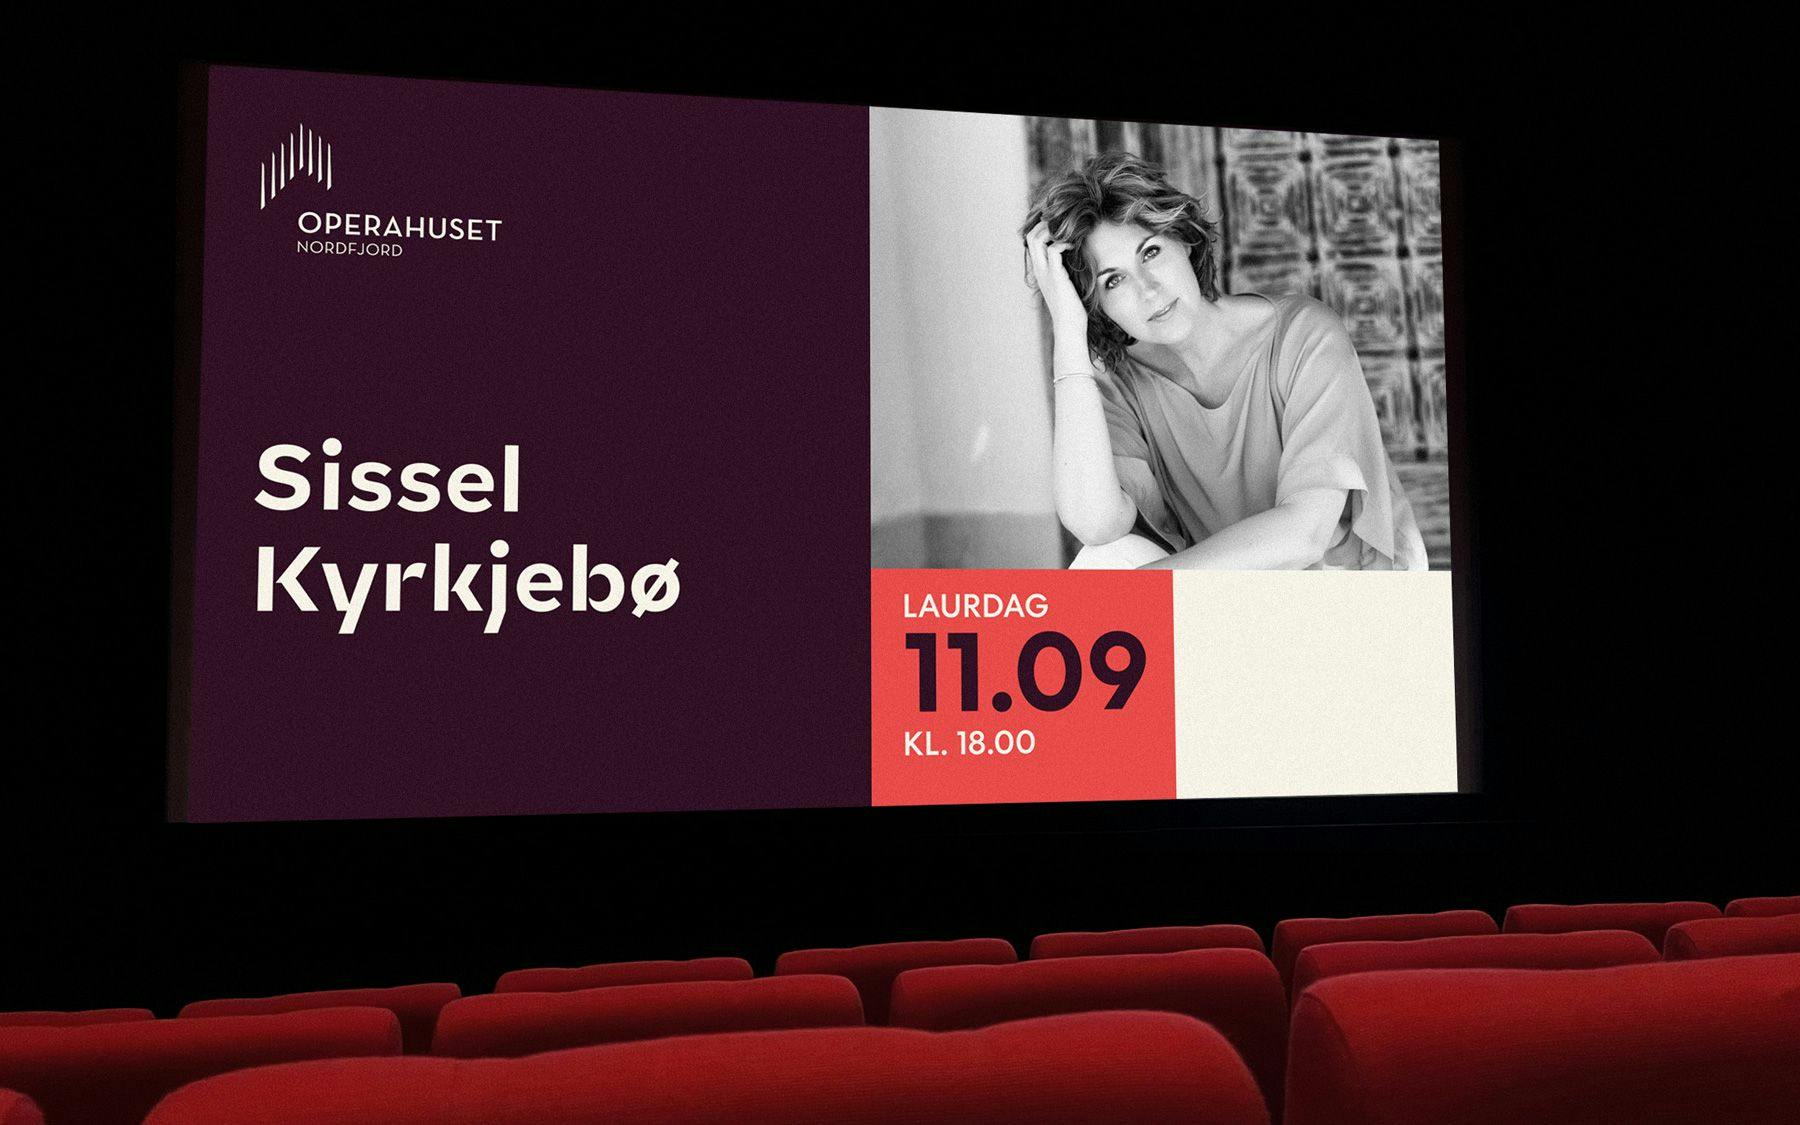 Sissel Kyrkjebø plakate på kino duk. 